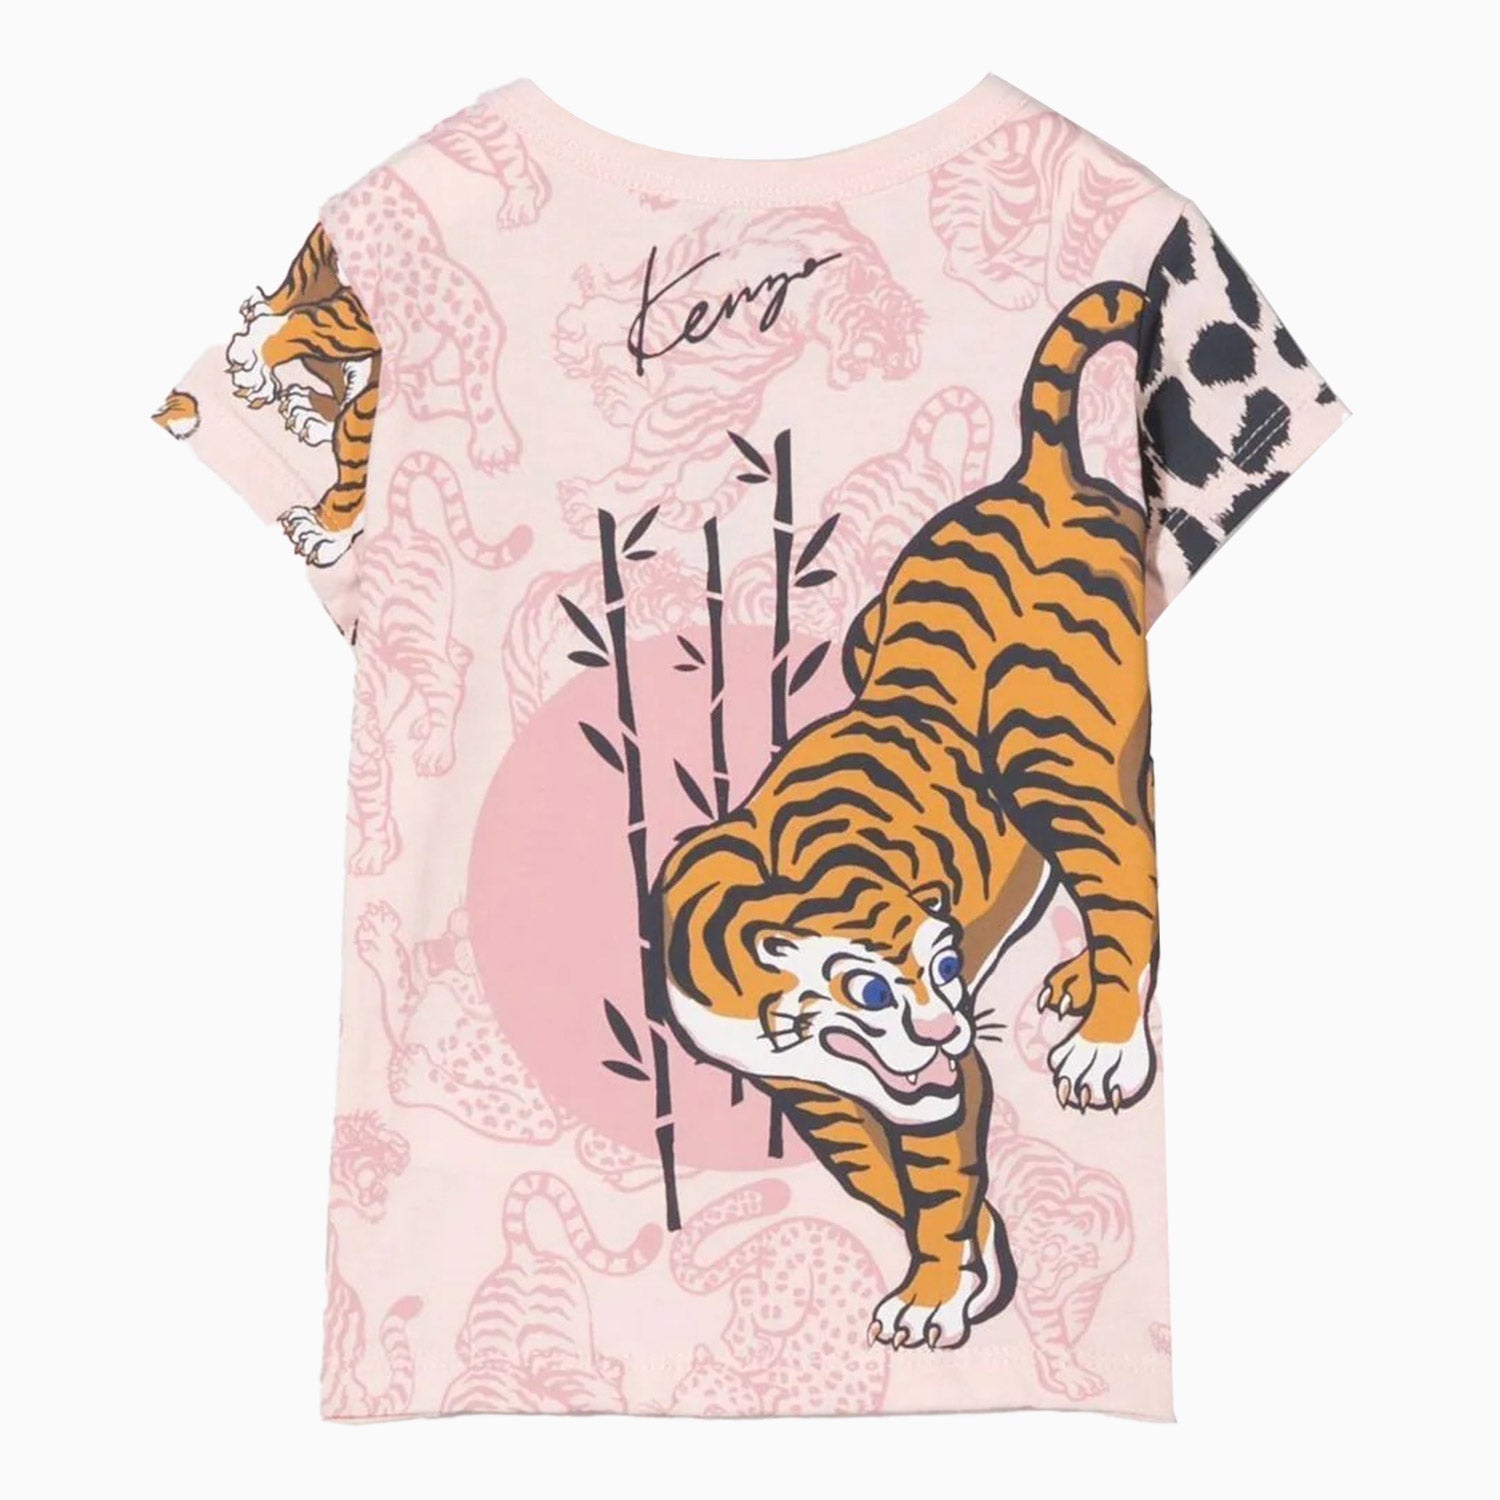 kenzo-kids-tiger-motif-t-shirt-toddlers-k05359-471